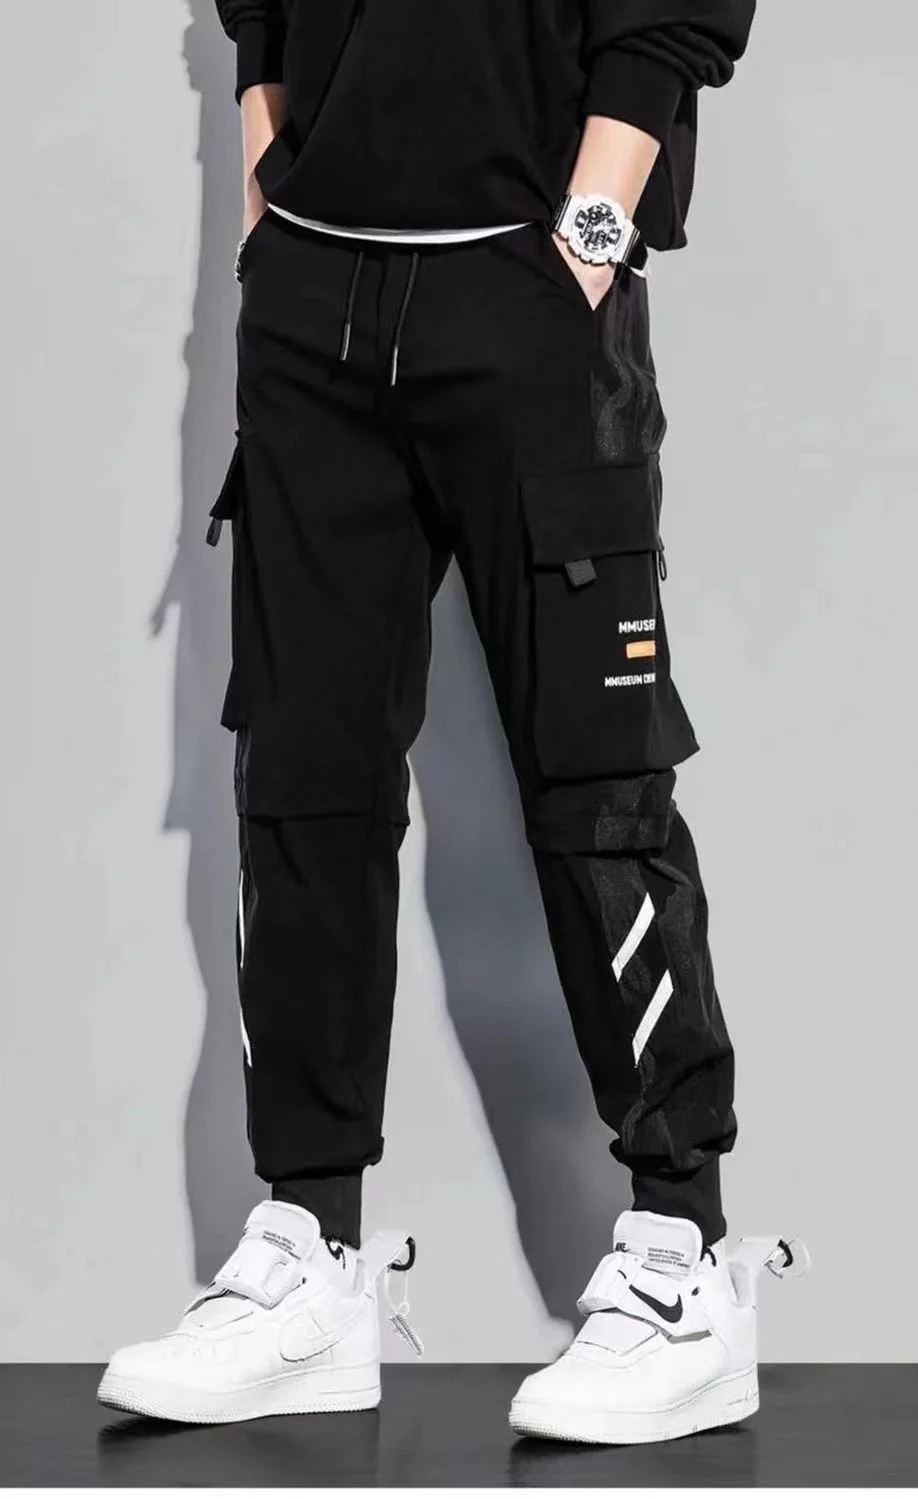 

Брюки-карго мужские/женские классические, повседневные штаны для бега, с лентами, брюки-султанки, облегающие, с несколькими карманами, J5, весна